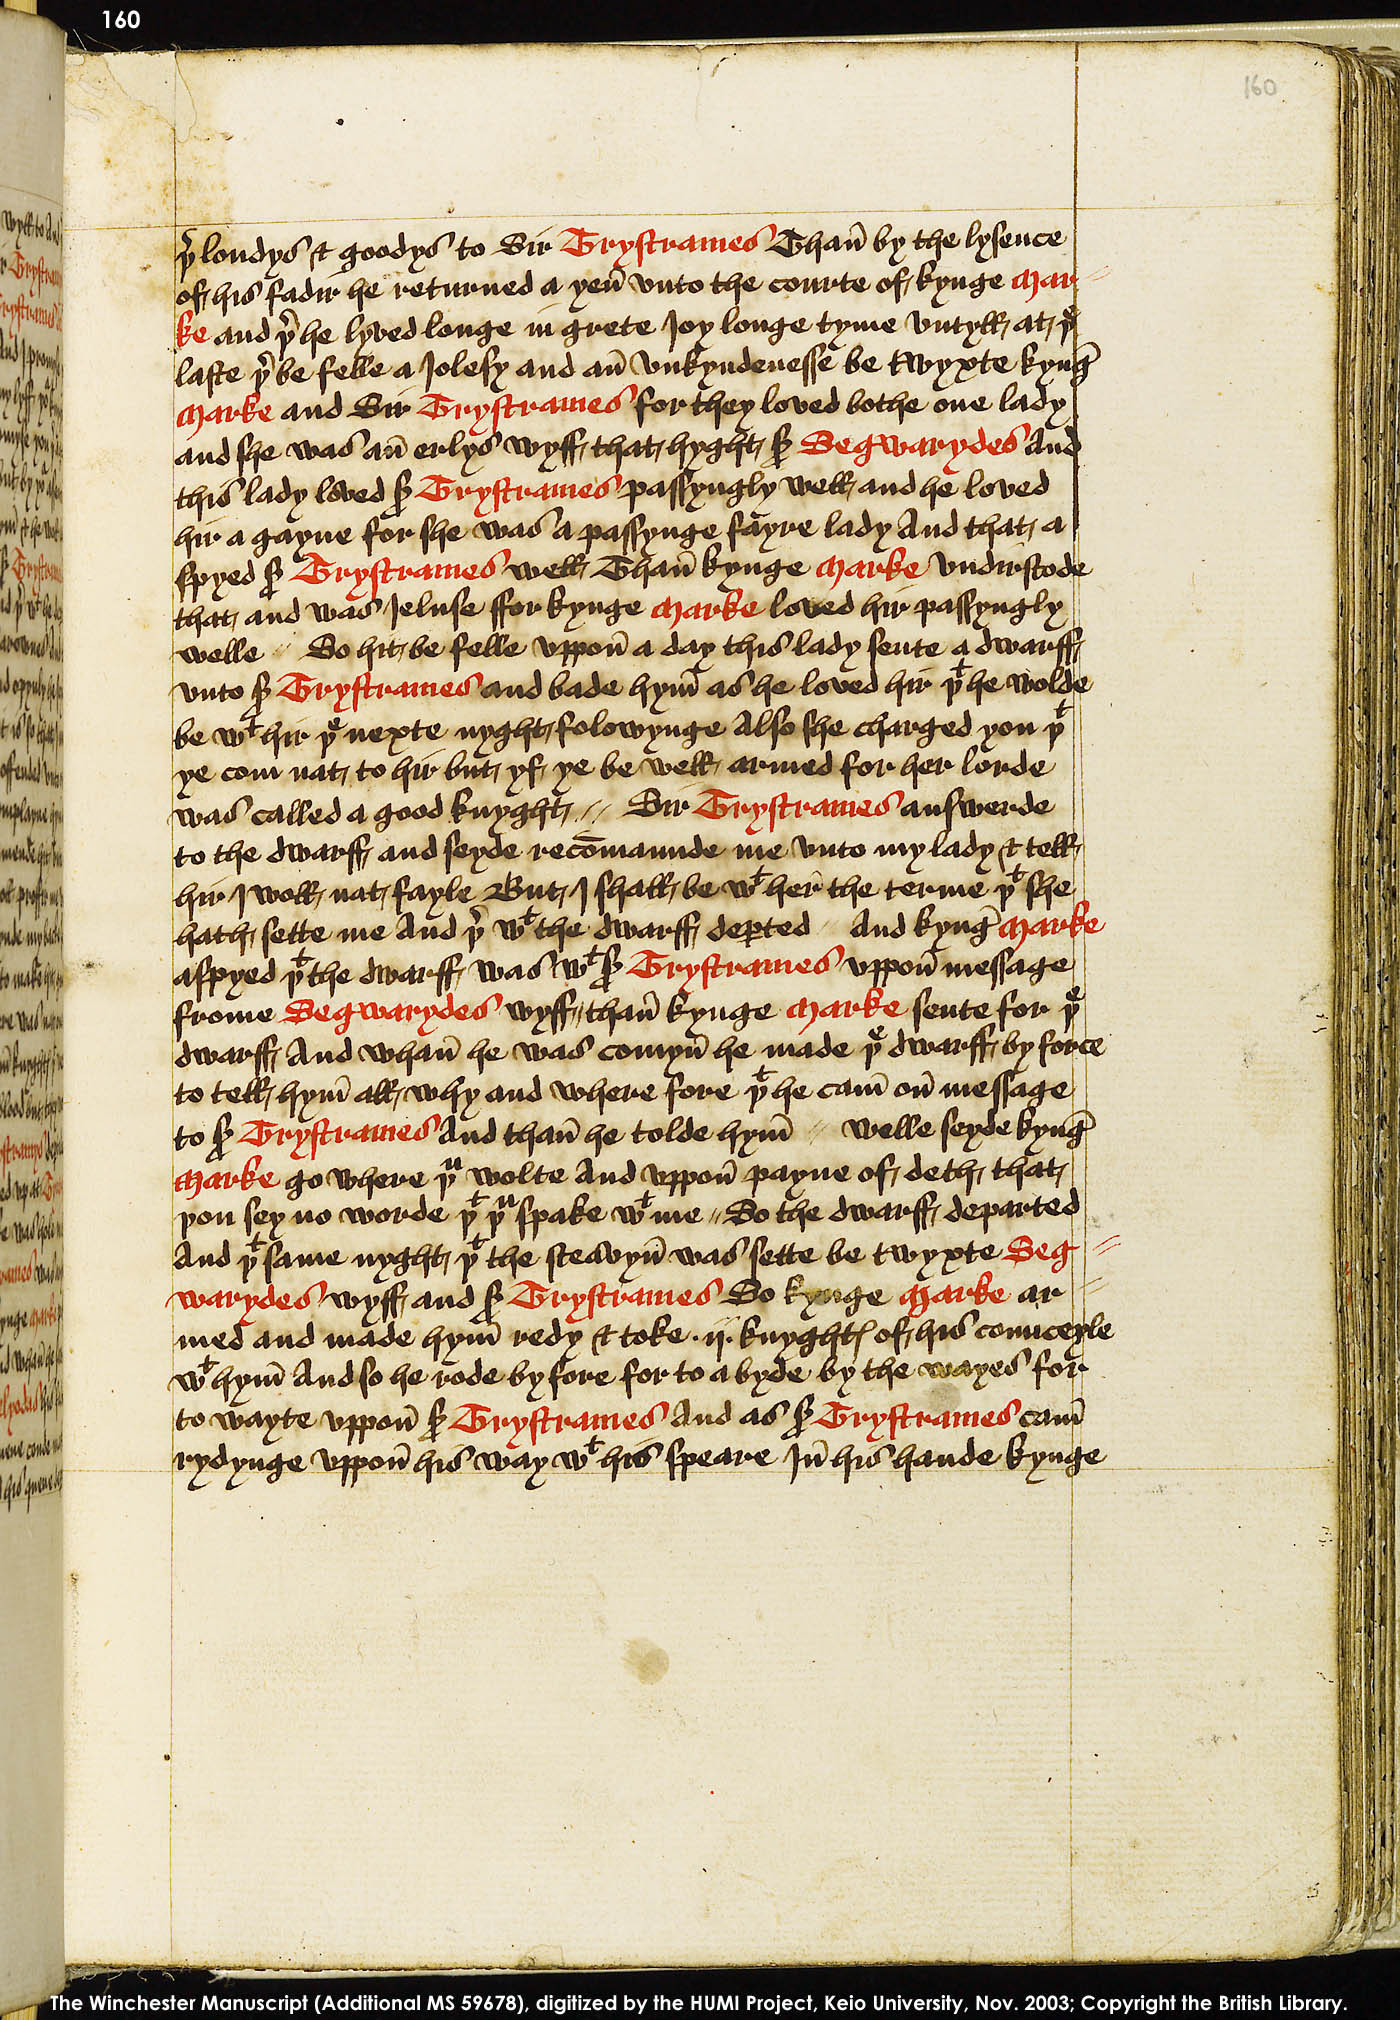 Folio 160r